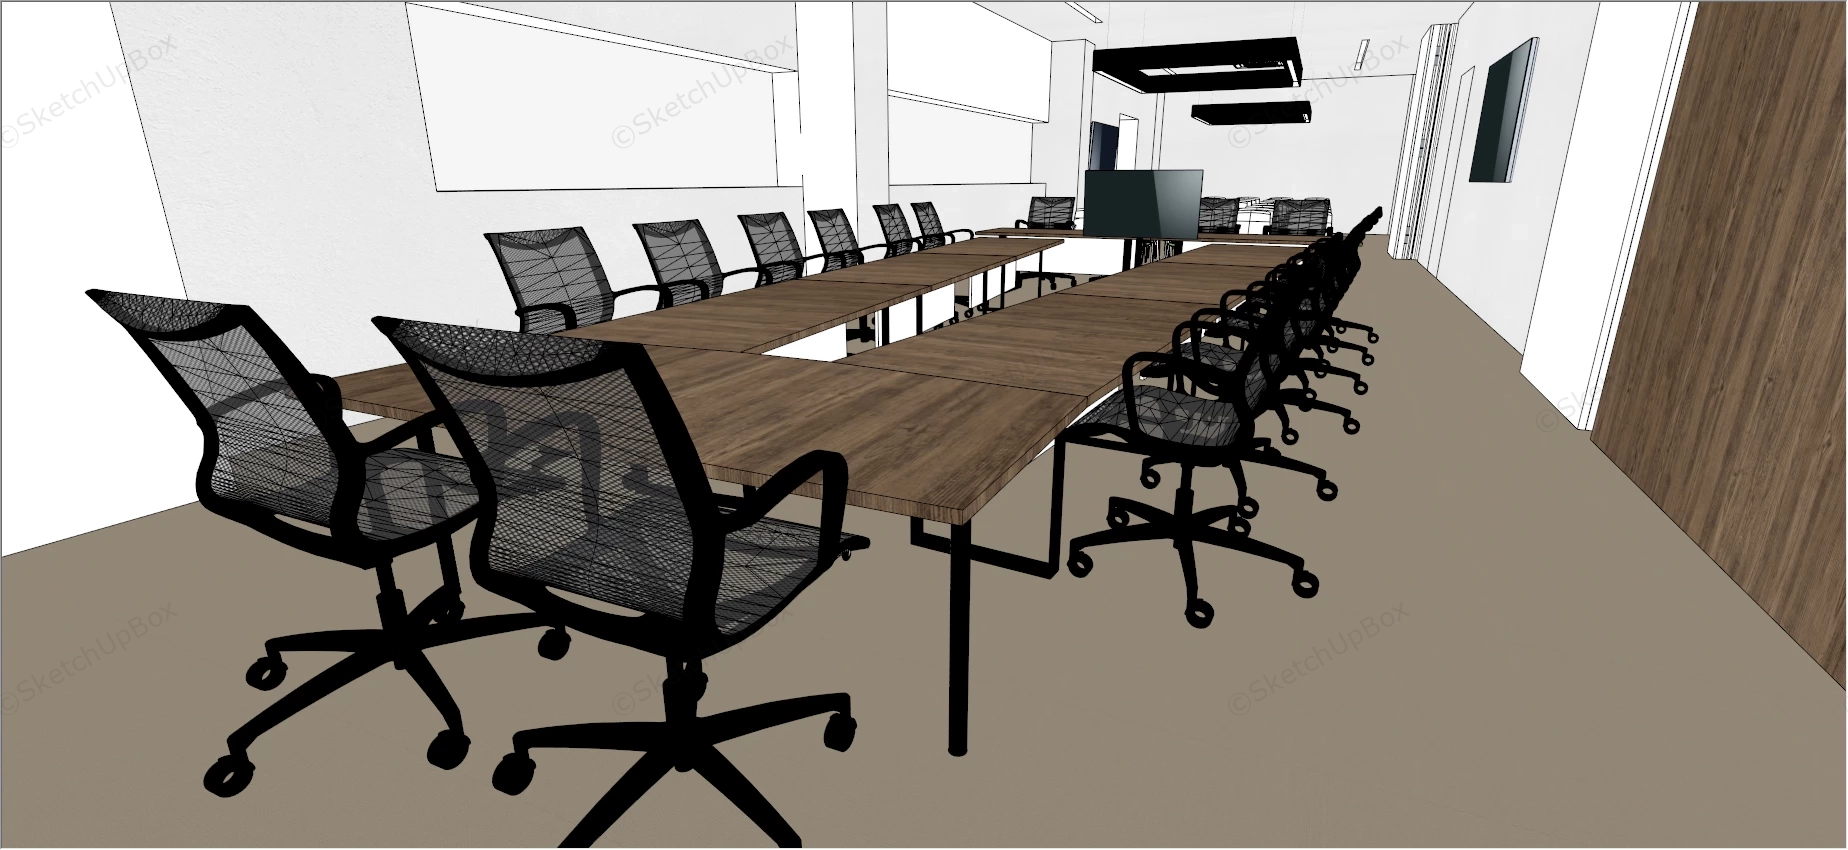 Board Room Interior Design sketchup model preview - SketchupBox